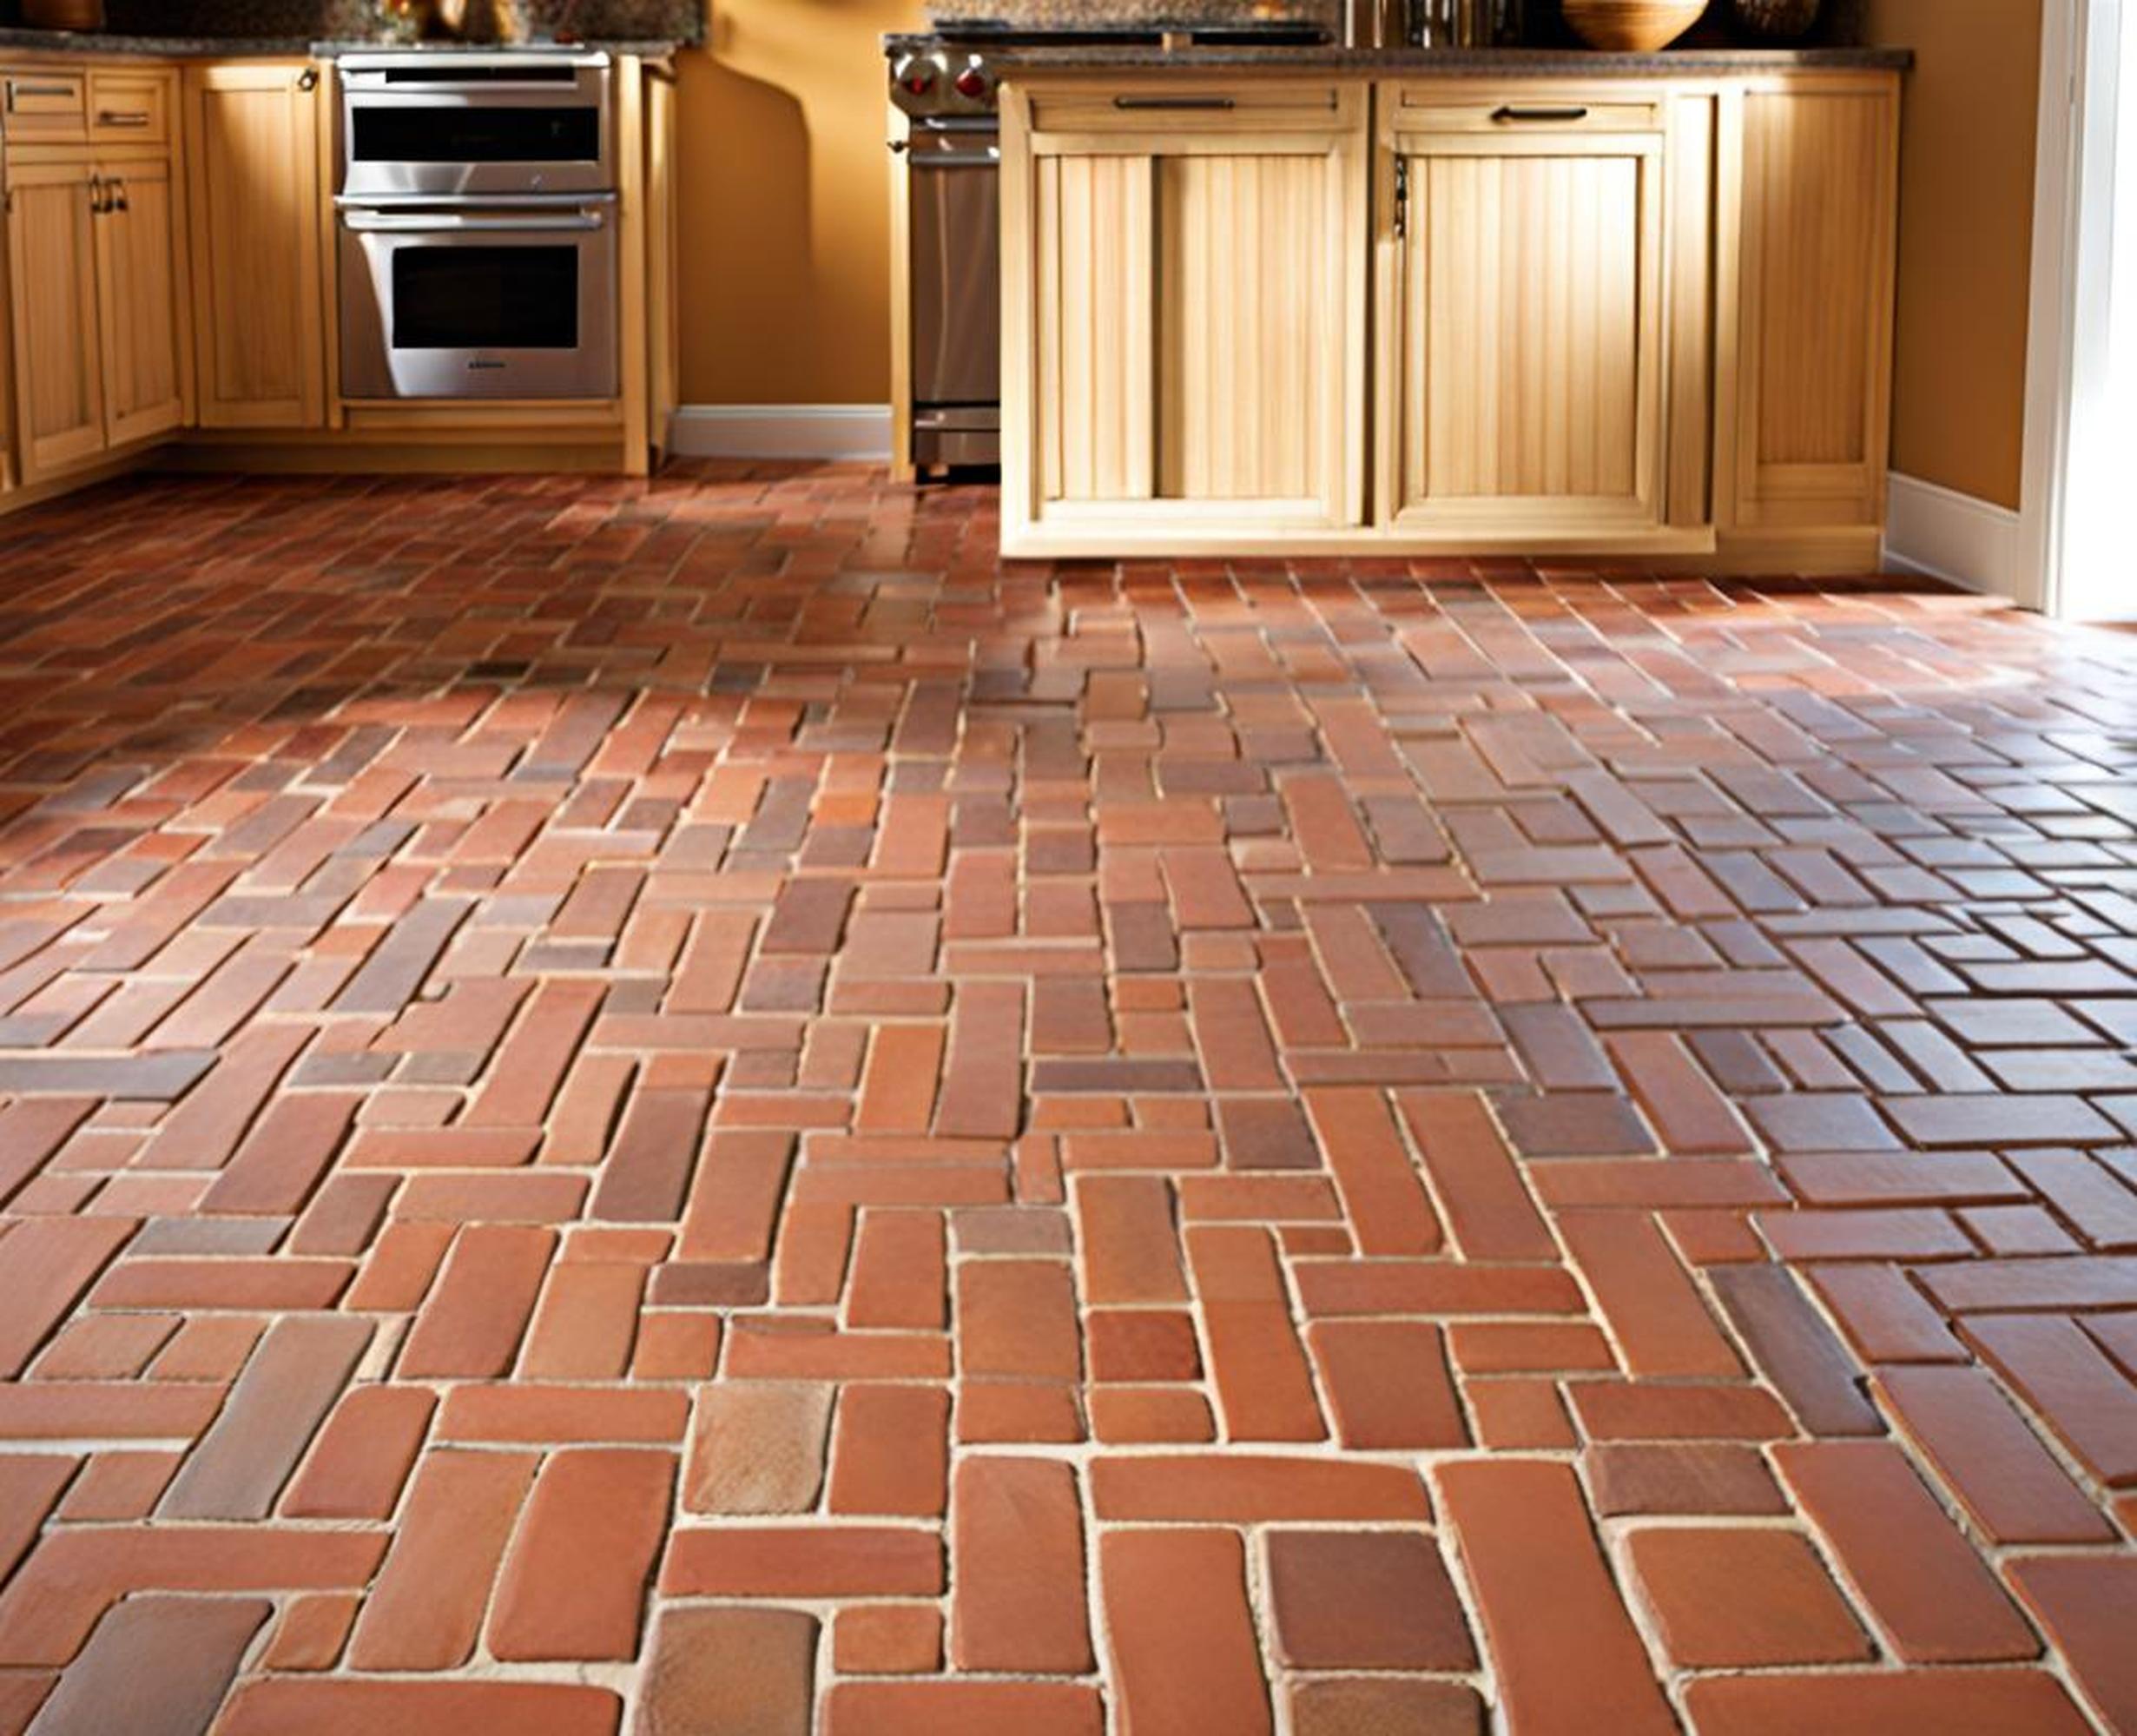 brick paver kitchen floor